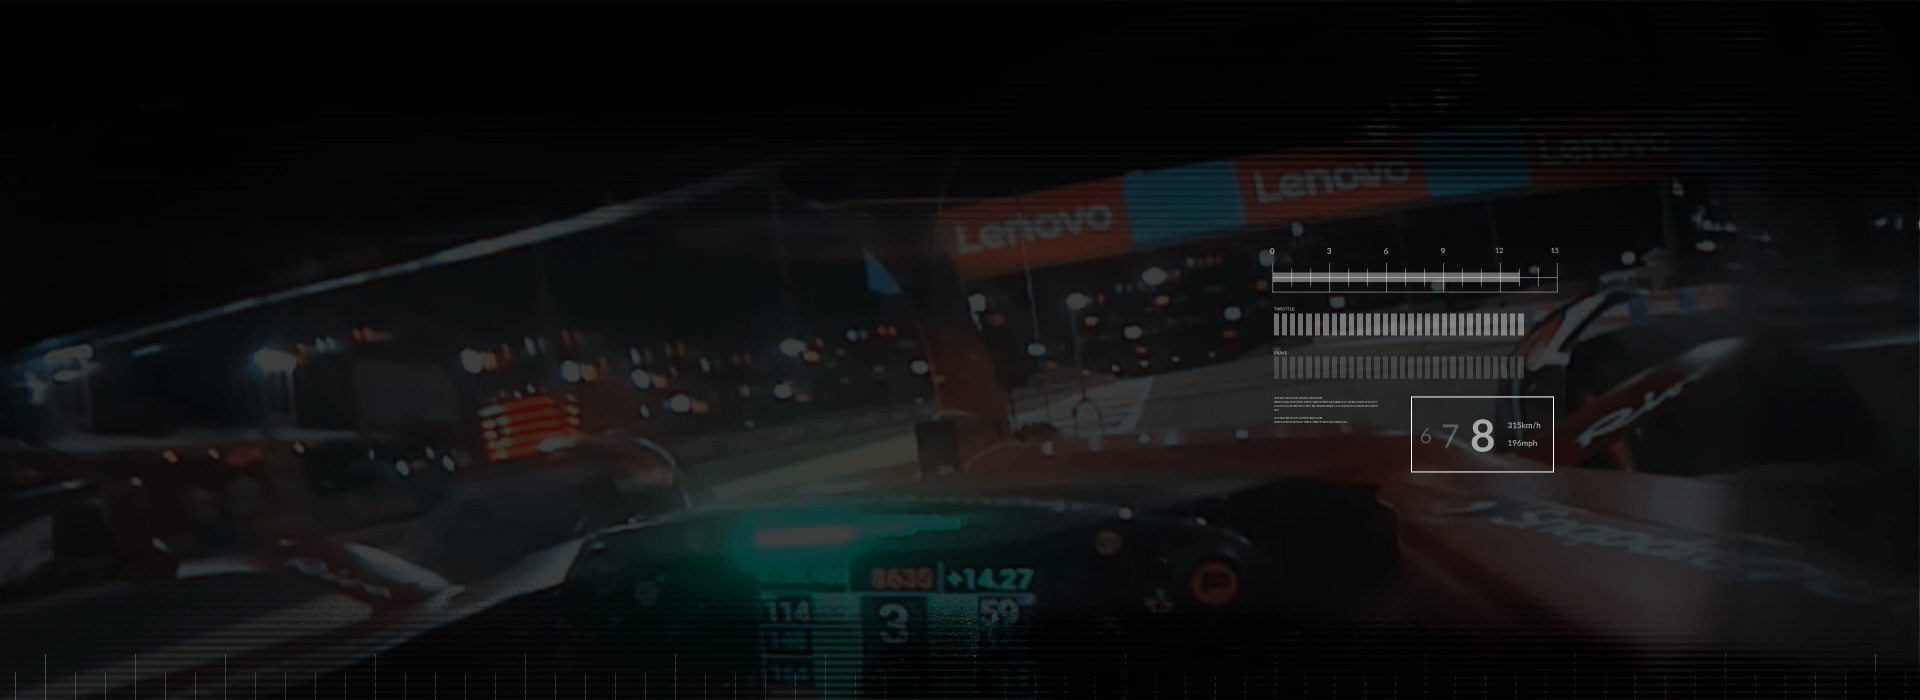 Vue interne d’un conducteur de voiture de course F1 en passant les bannières Lenovo sur une piste